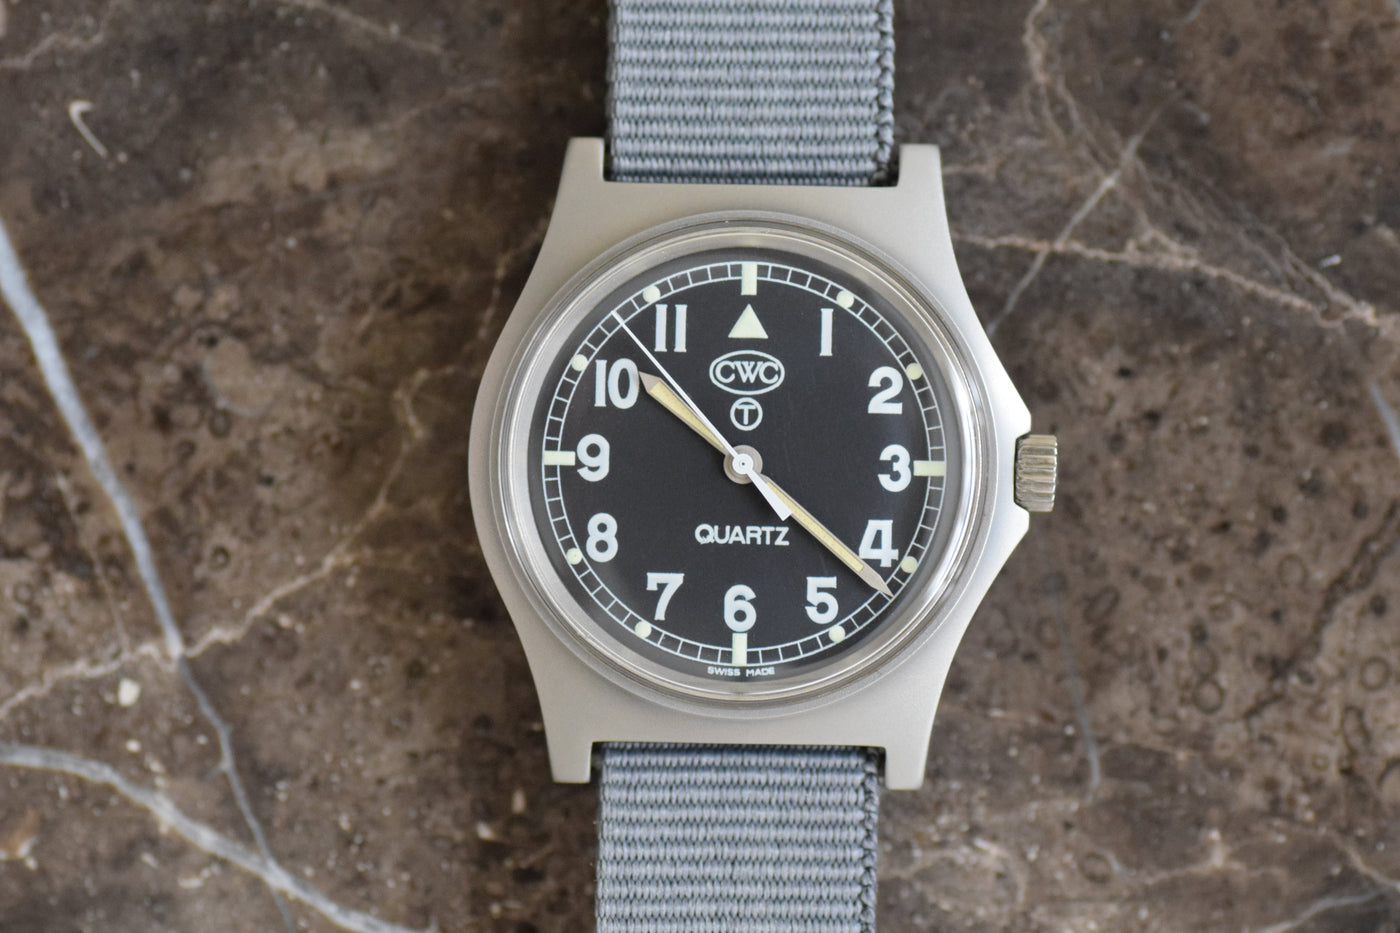 CWC ミリタリーウォッチ G10 イギリス軍腕時計 0552/6645-99 クオーツ 